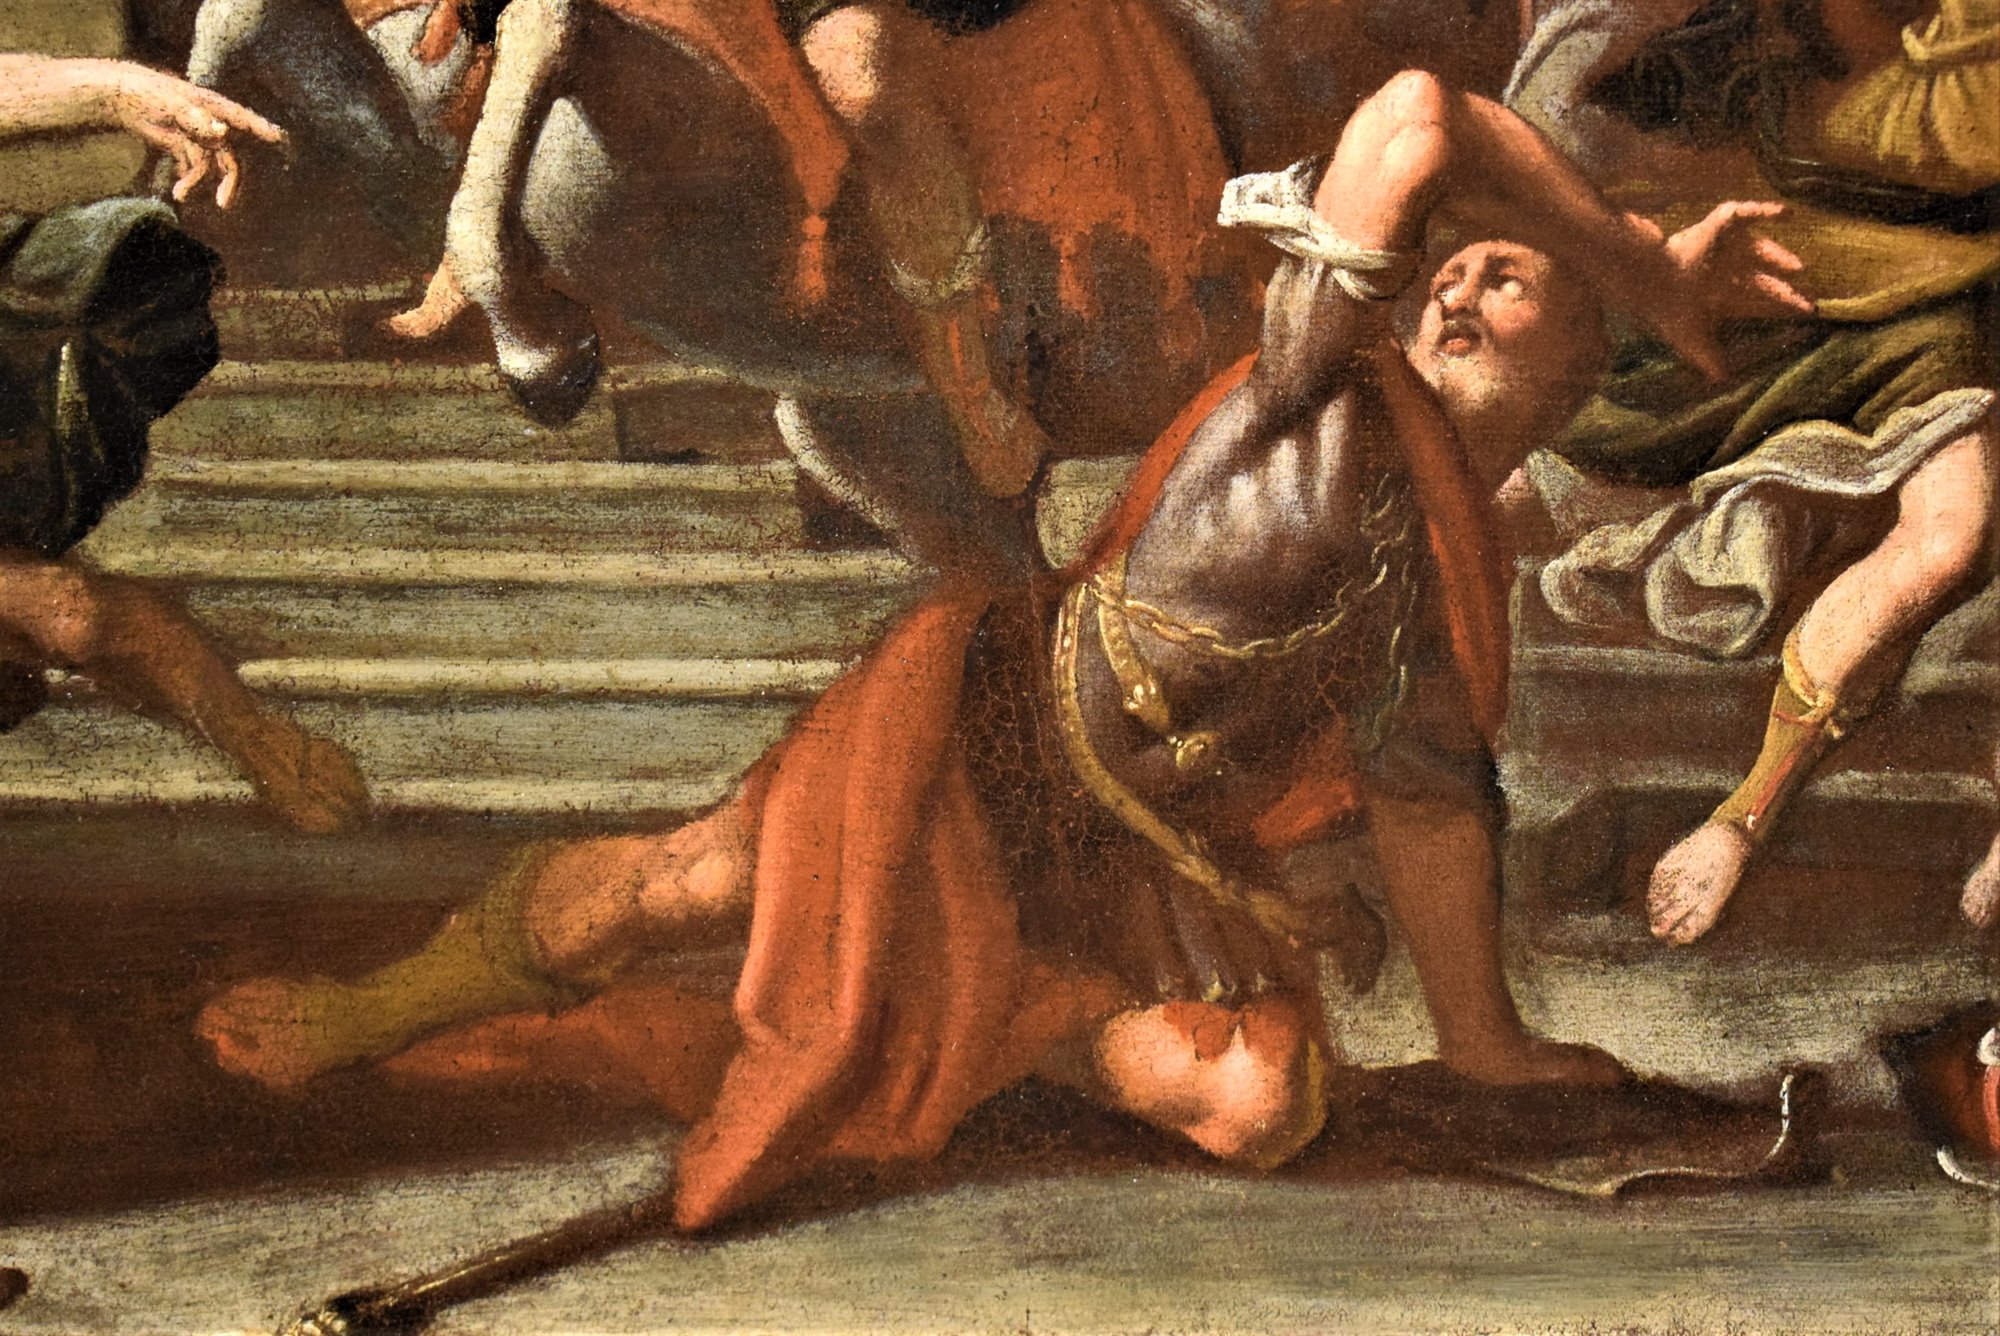 "Héliodore chassé du Temple"